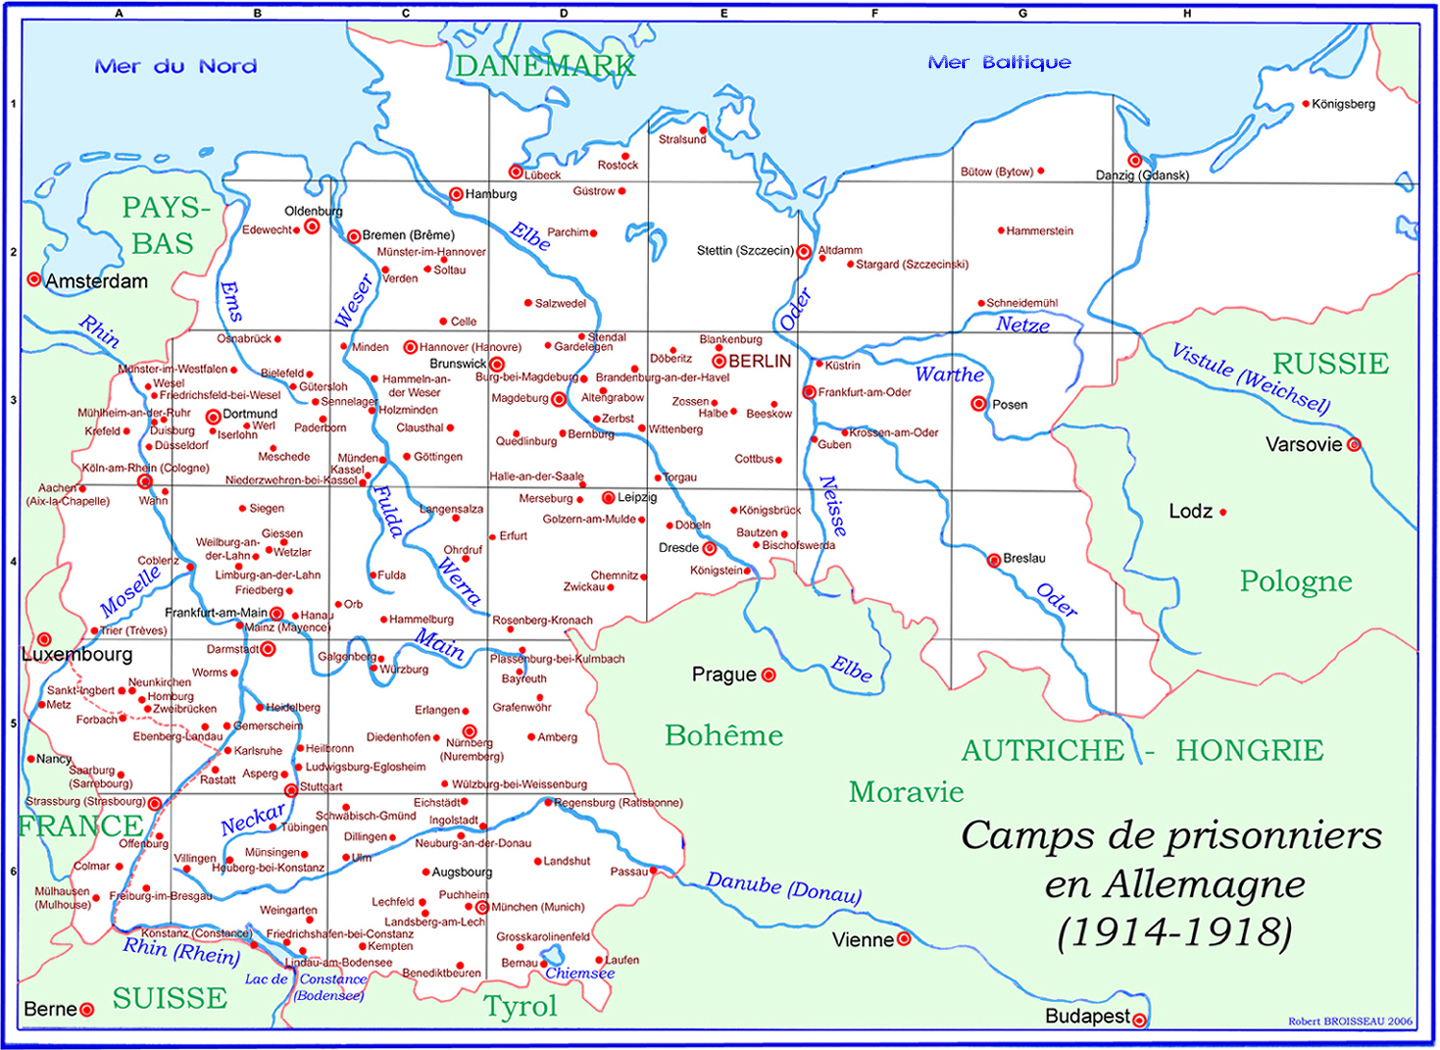 Carte des camps de prisonnier en Allemagne pendant la Première Guerre Mondiale